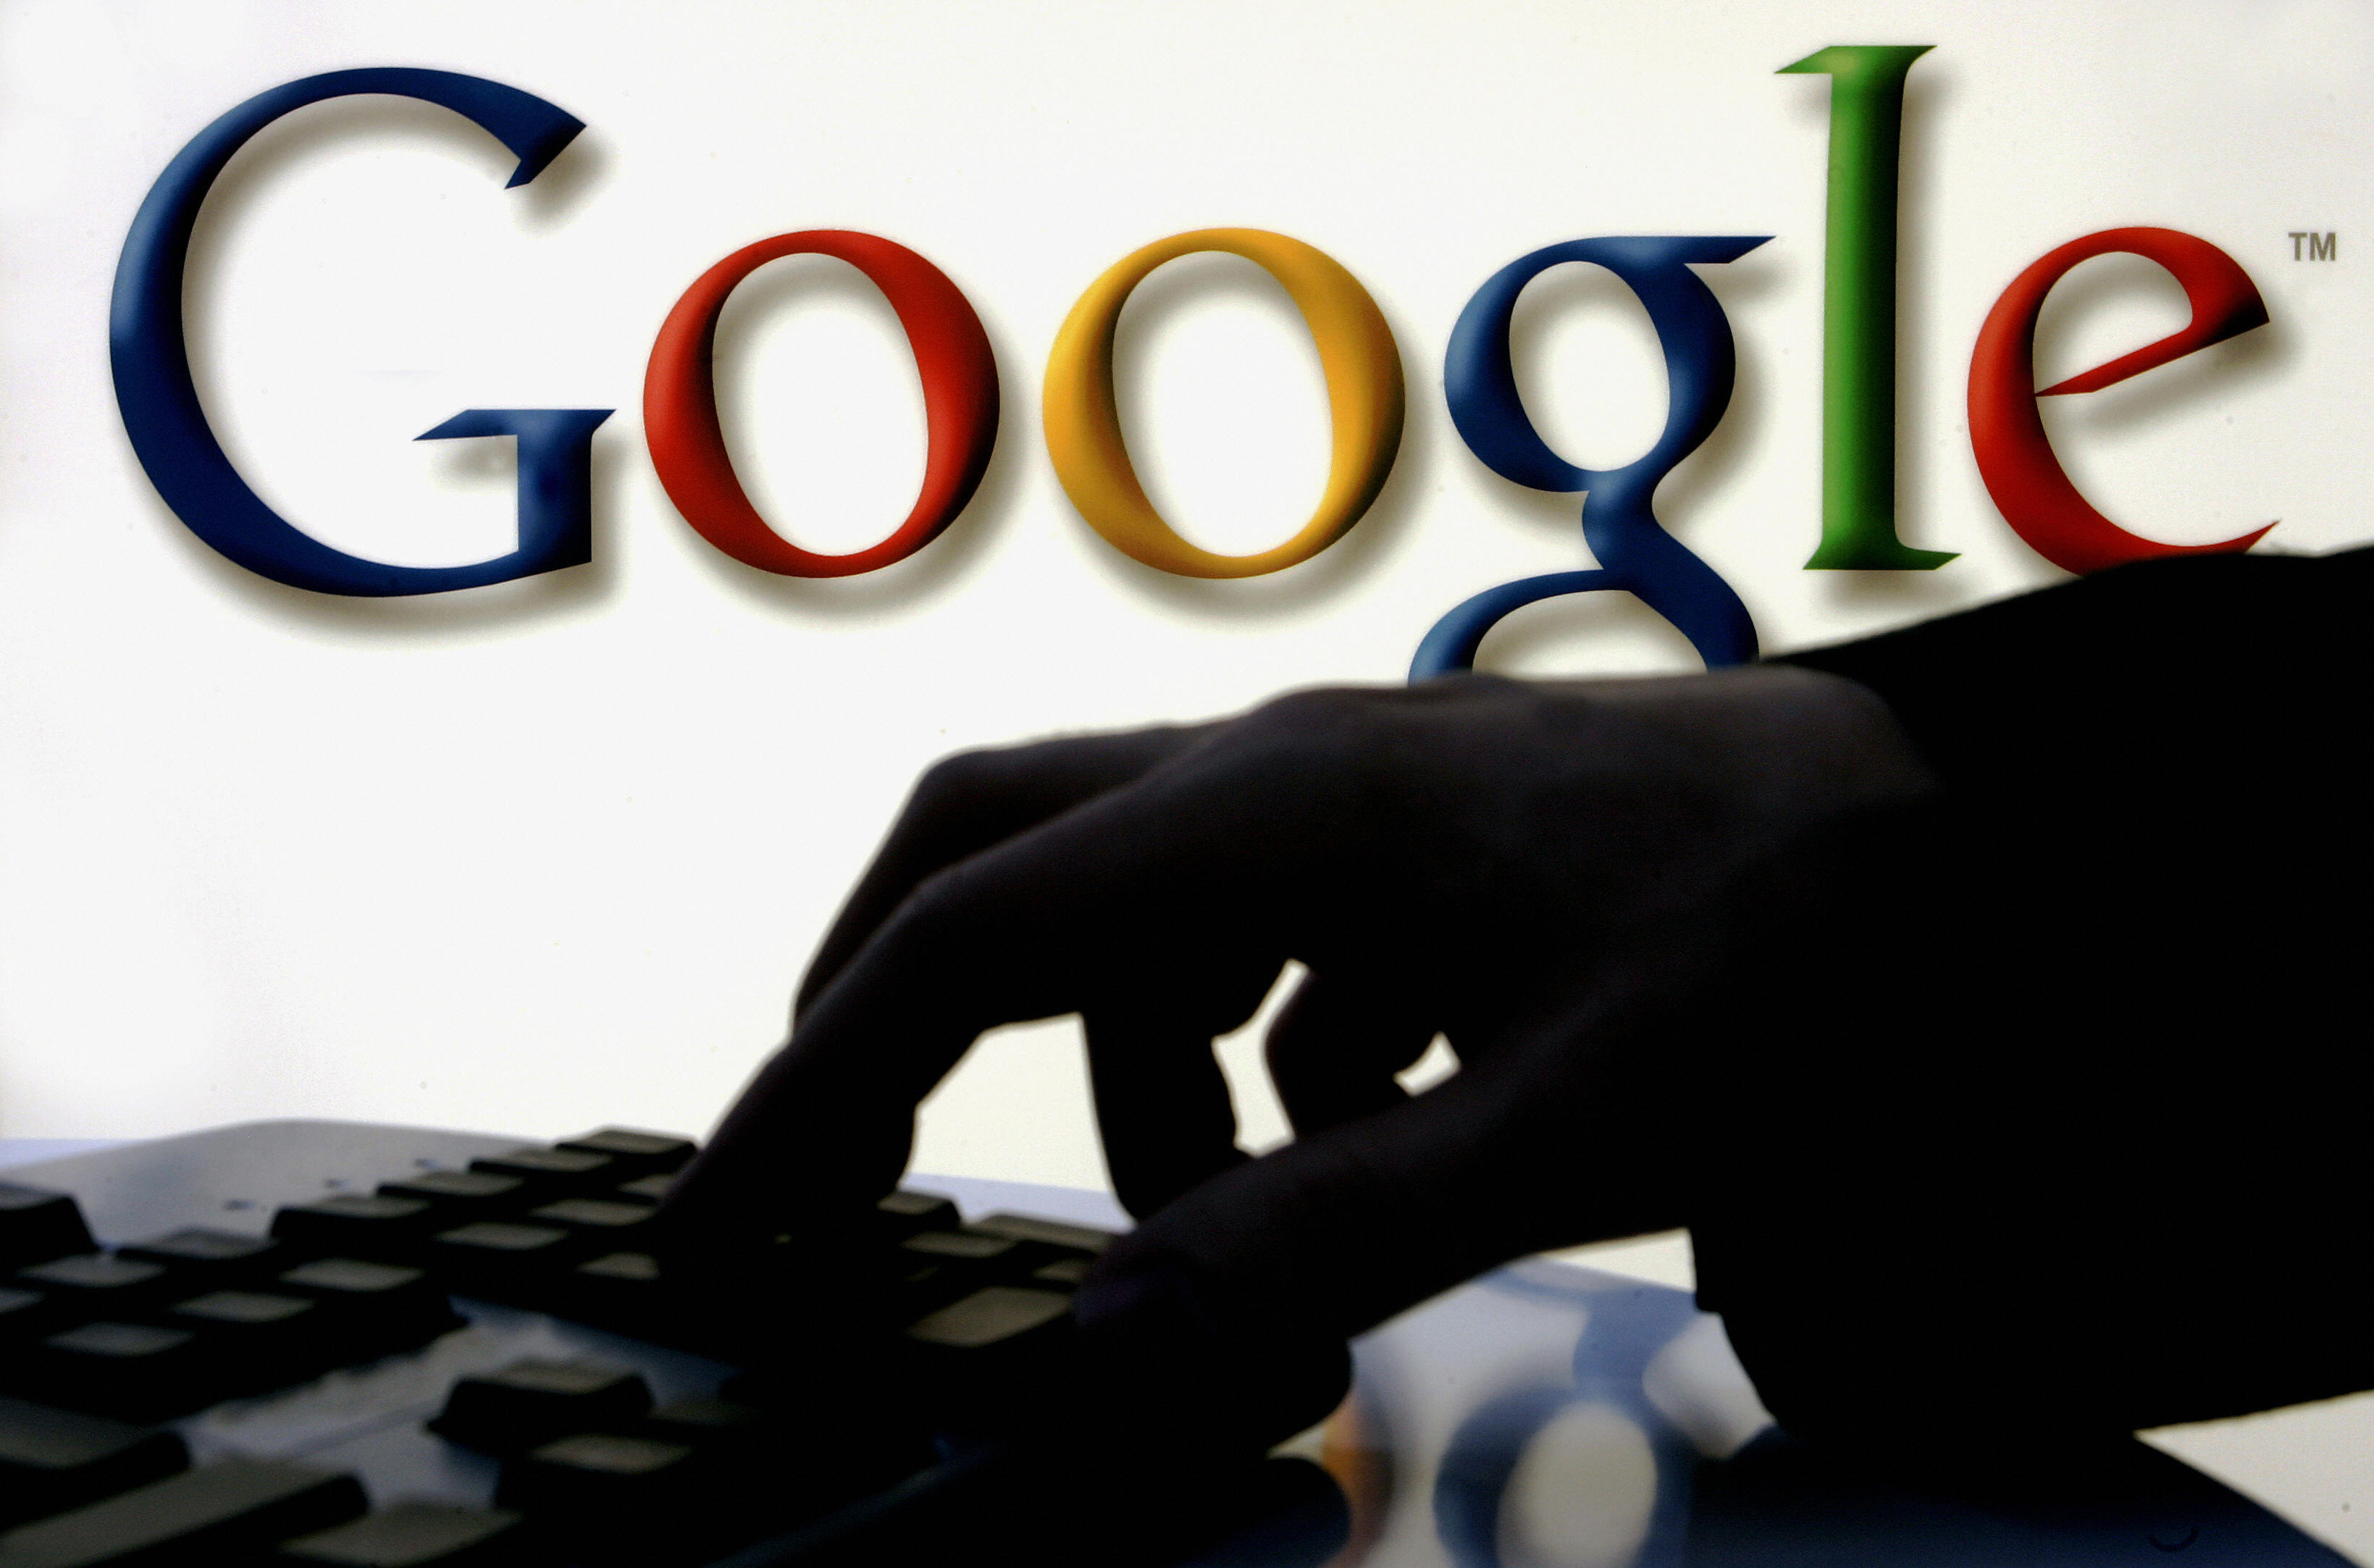 新漏洞再泄5250萬用戶資料 谷歌宣布提前關閉Google+